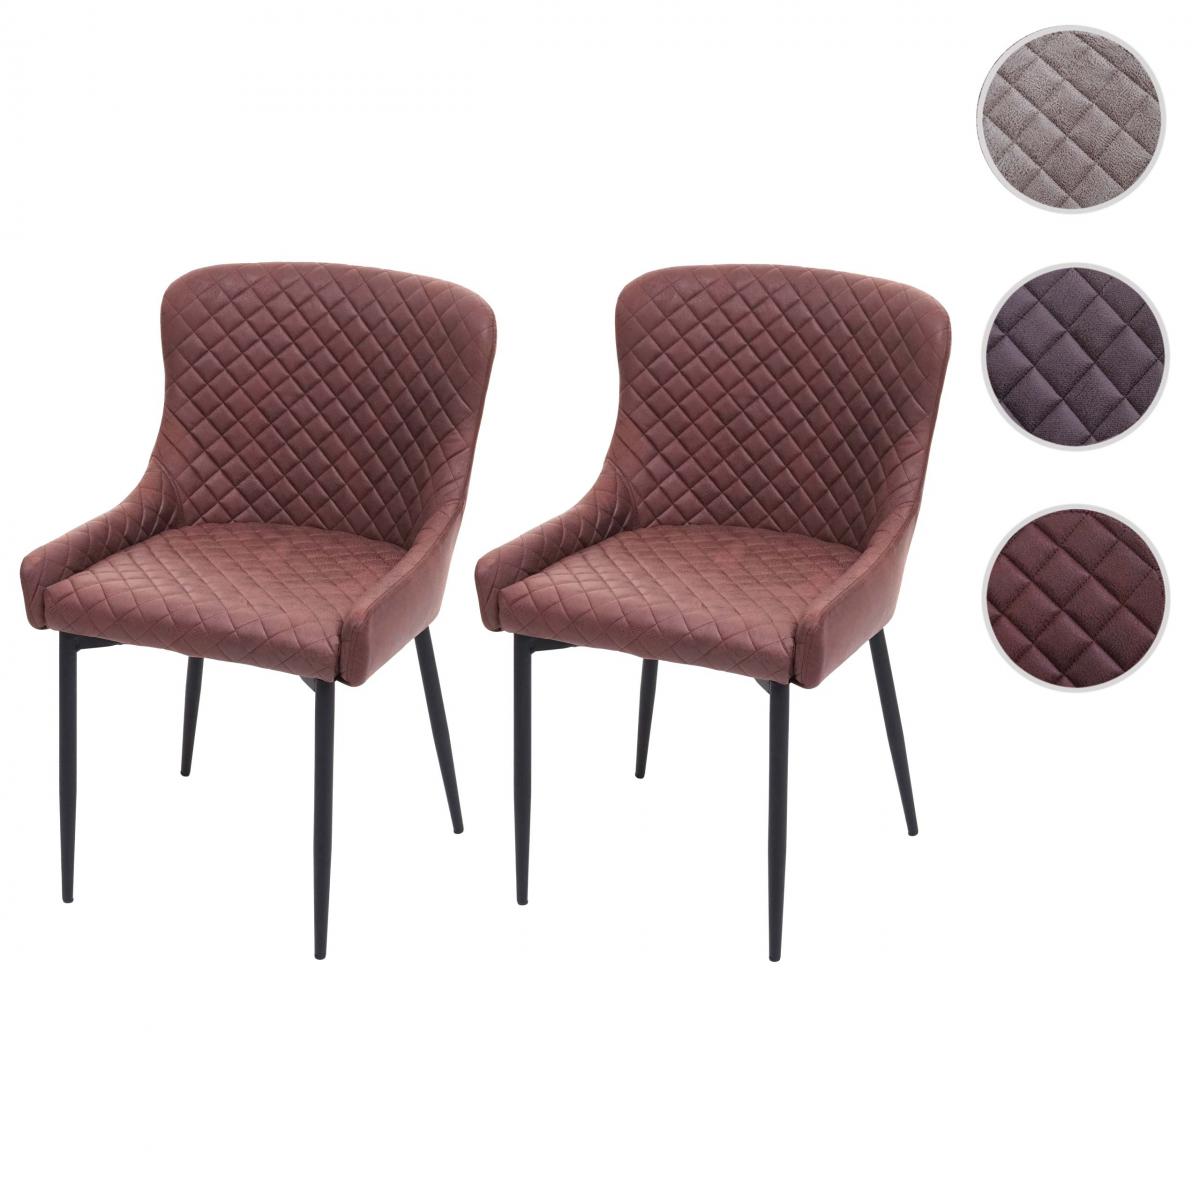 Mendler - 2x chaise de salle à manger HWC-H79, chaise de cuisine, fauteuil, métal, vintage ~ tissu / textile marron - Chaises